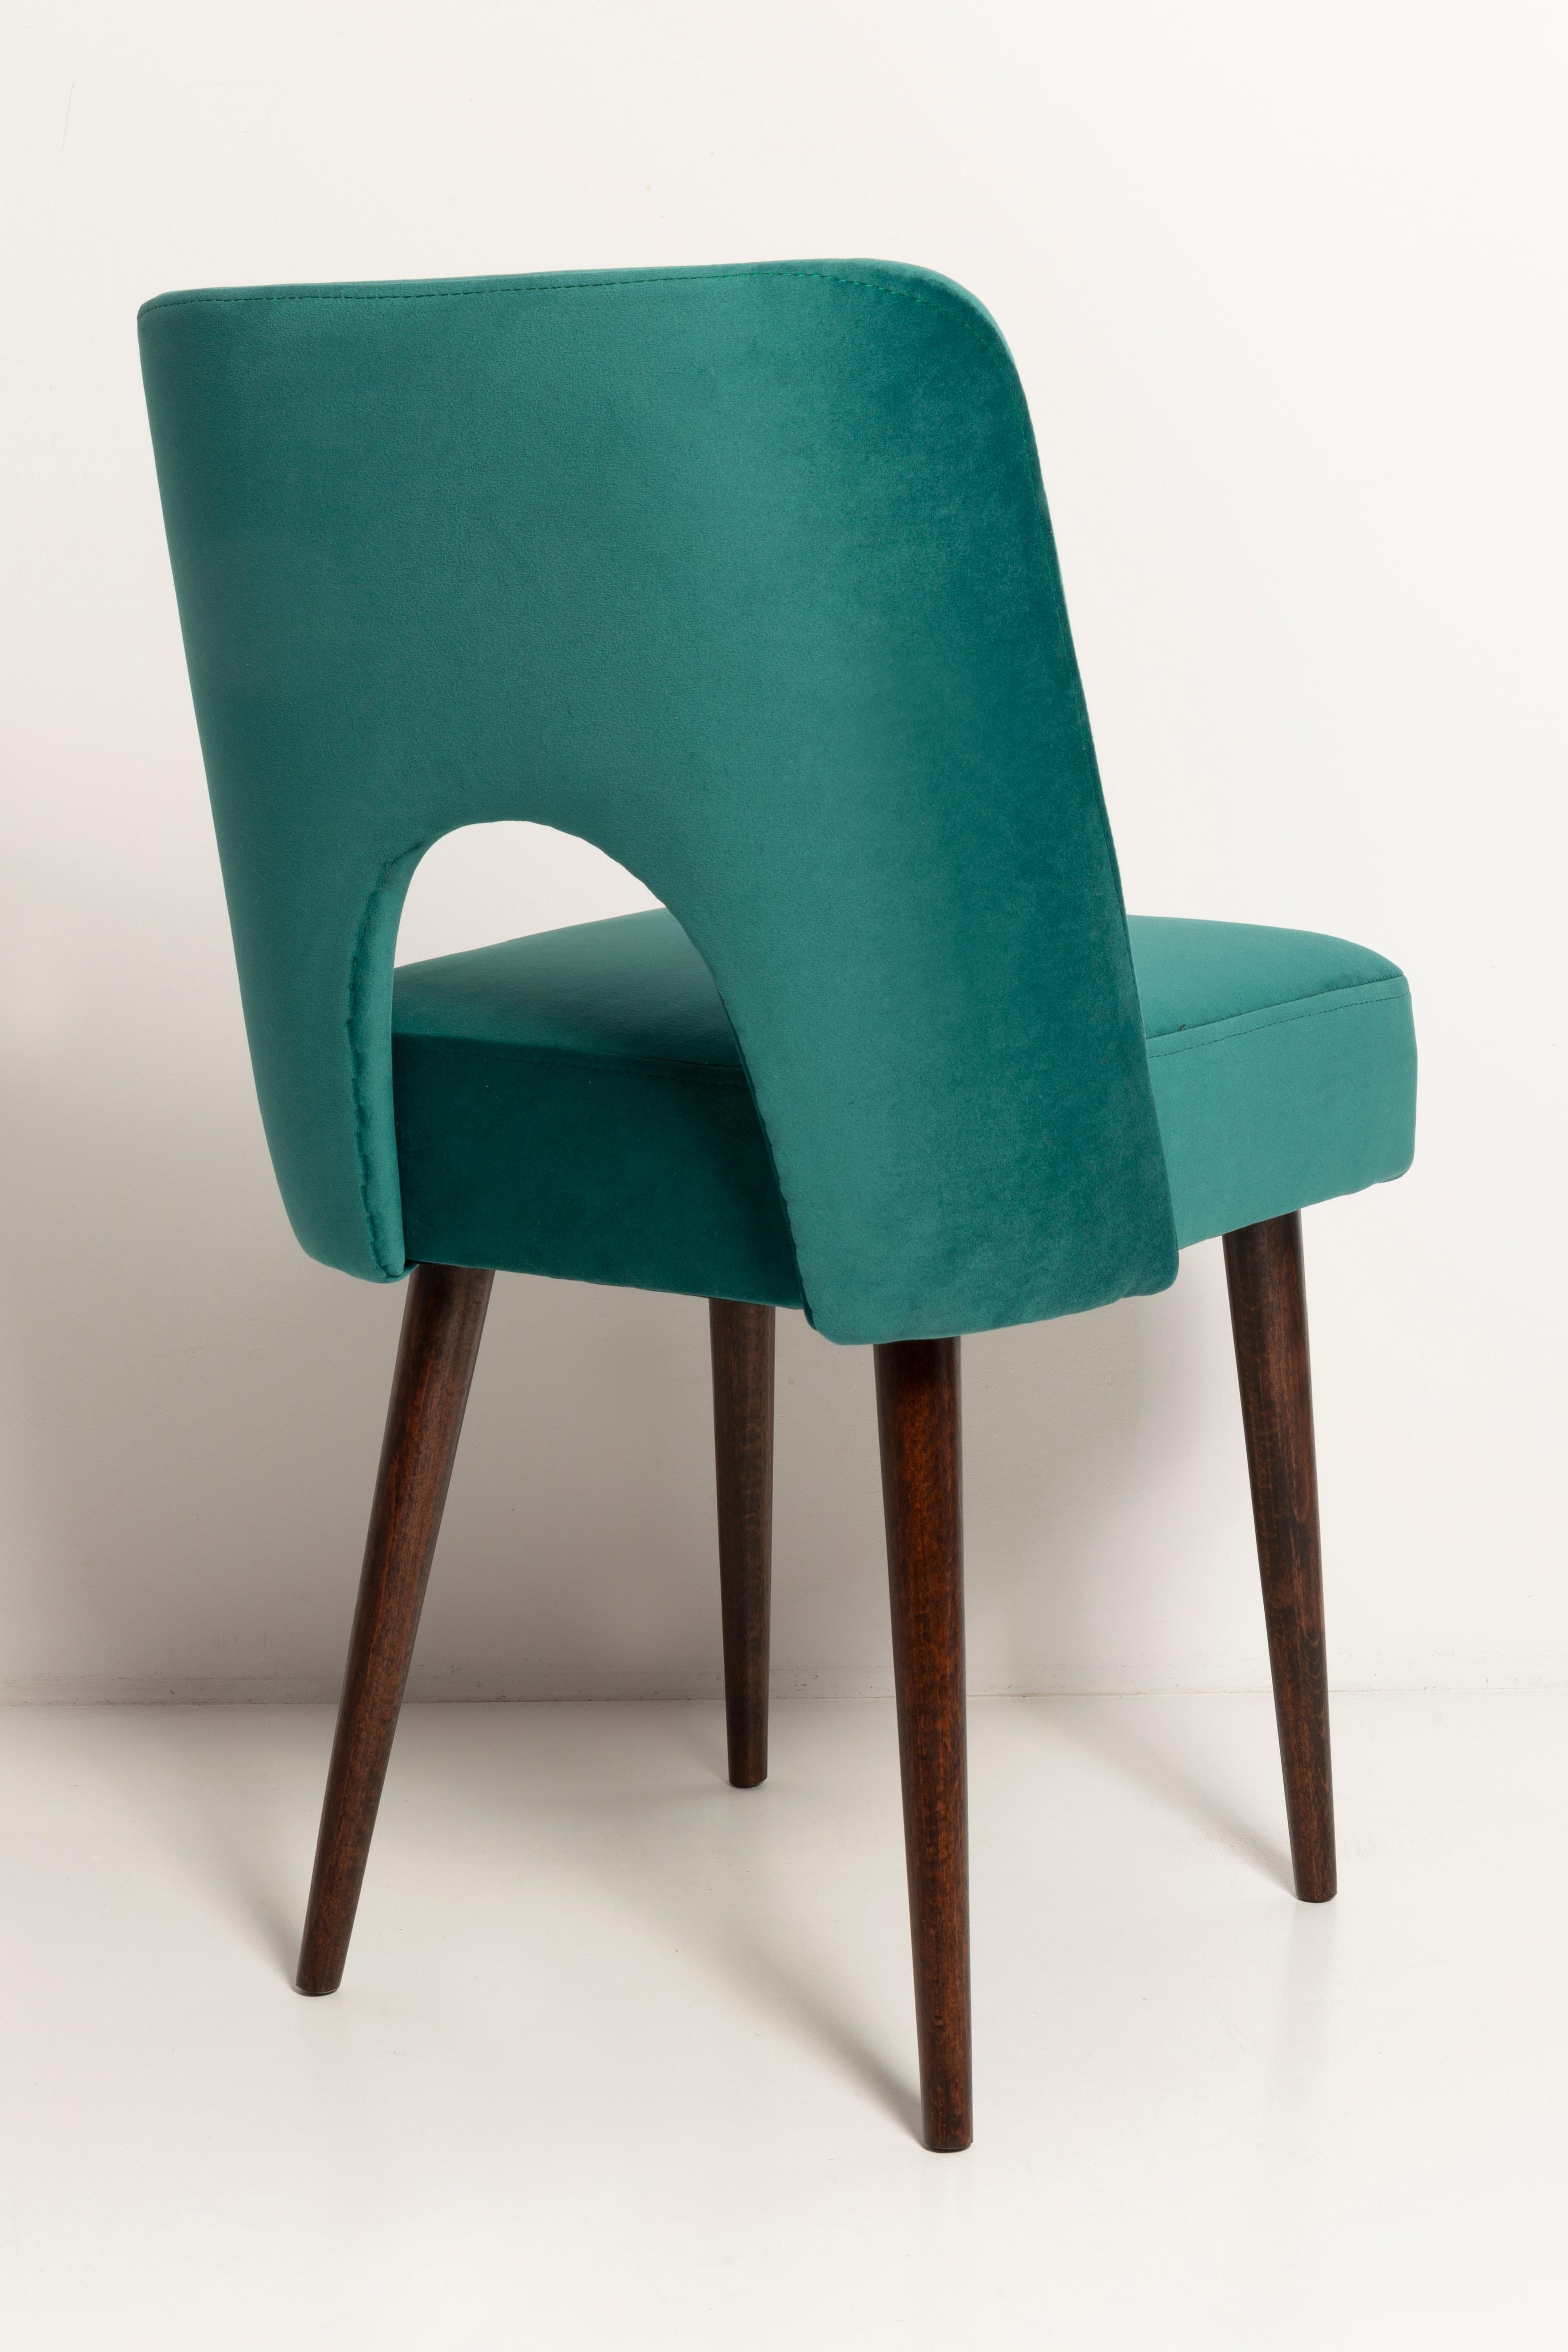 Set of Four Dark Green Velvet 'Shell' Chairs, Europe, 1960s For Sale 3